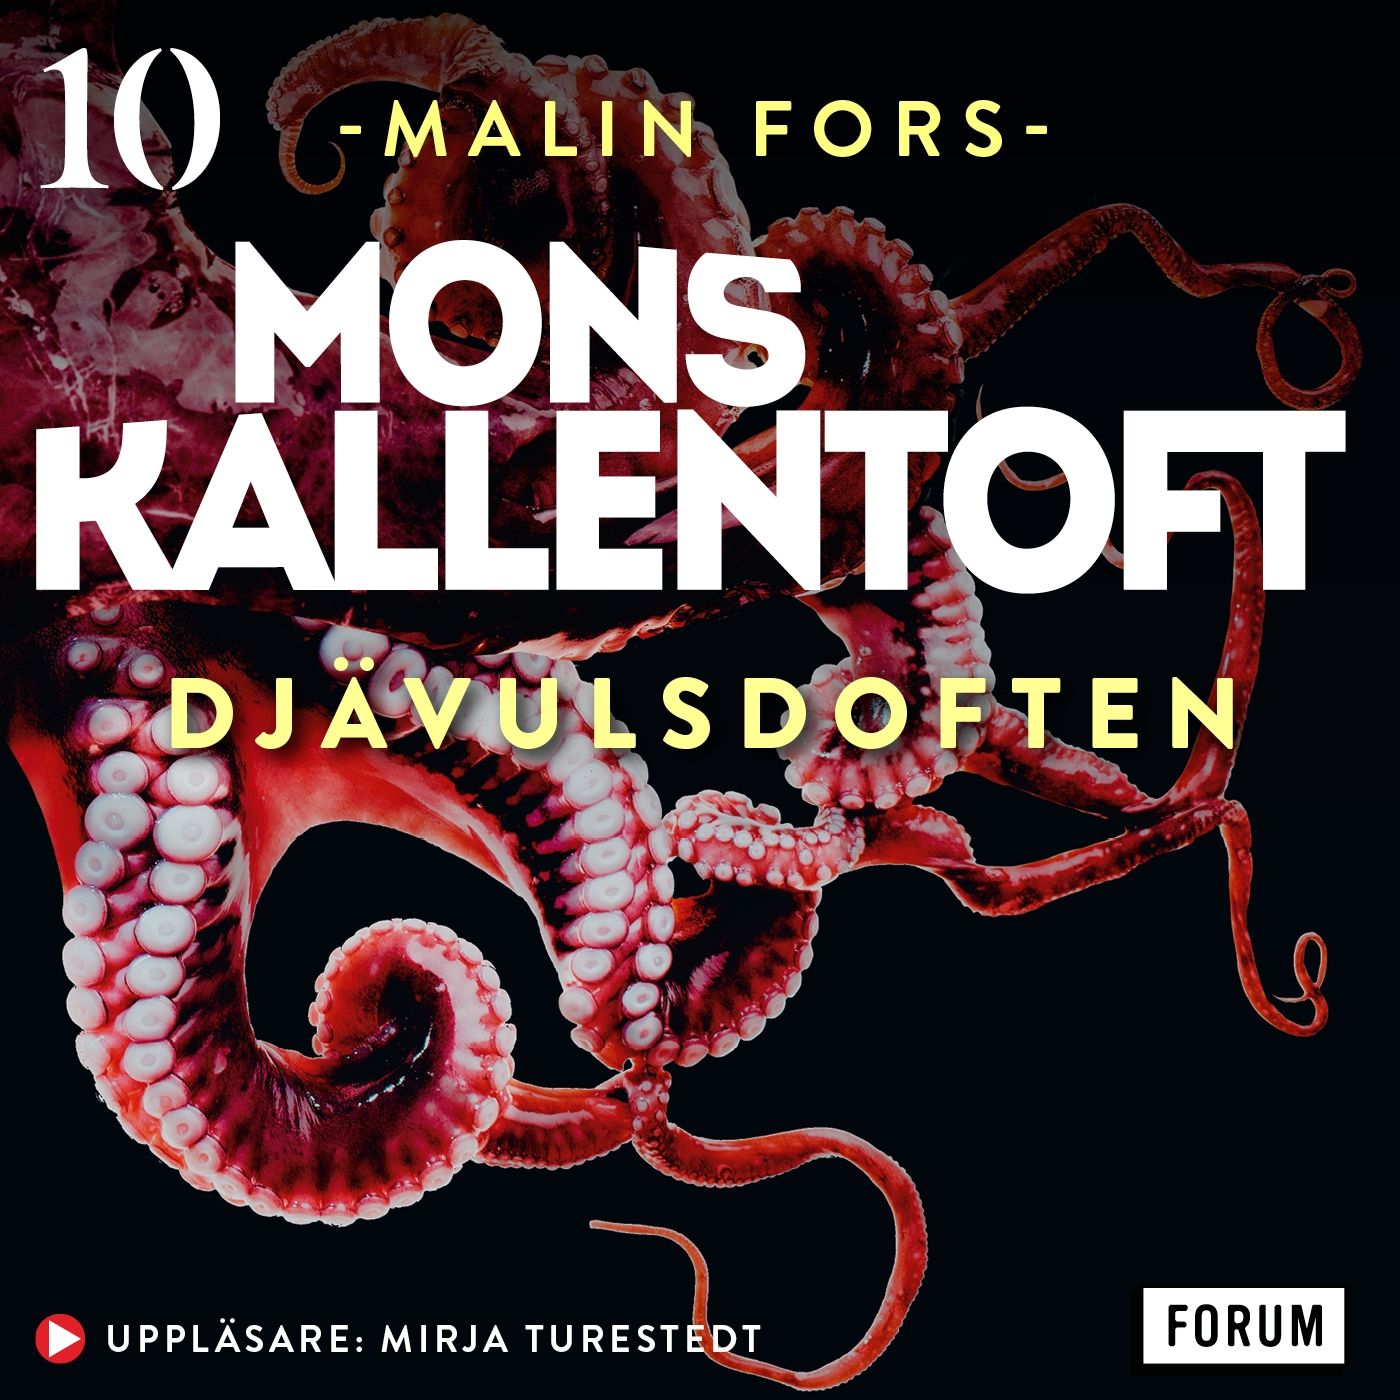 Djävulsdoften, ljudbok av Mons Kallentoft